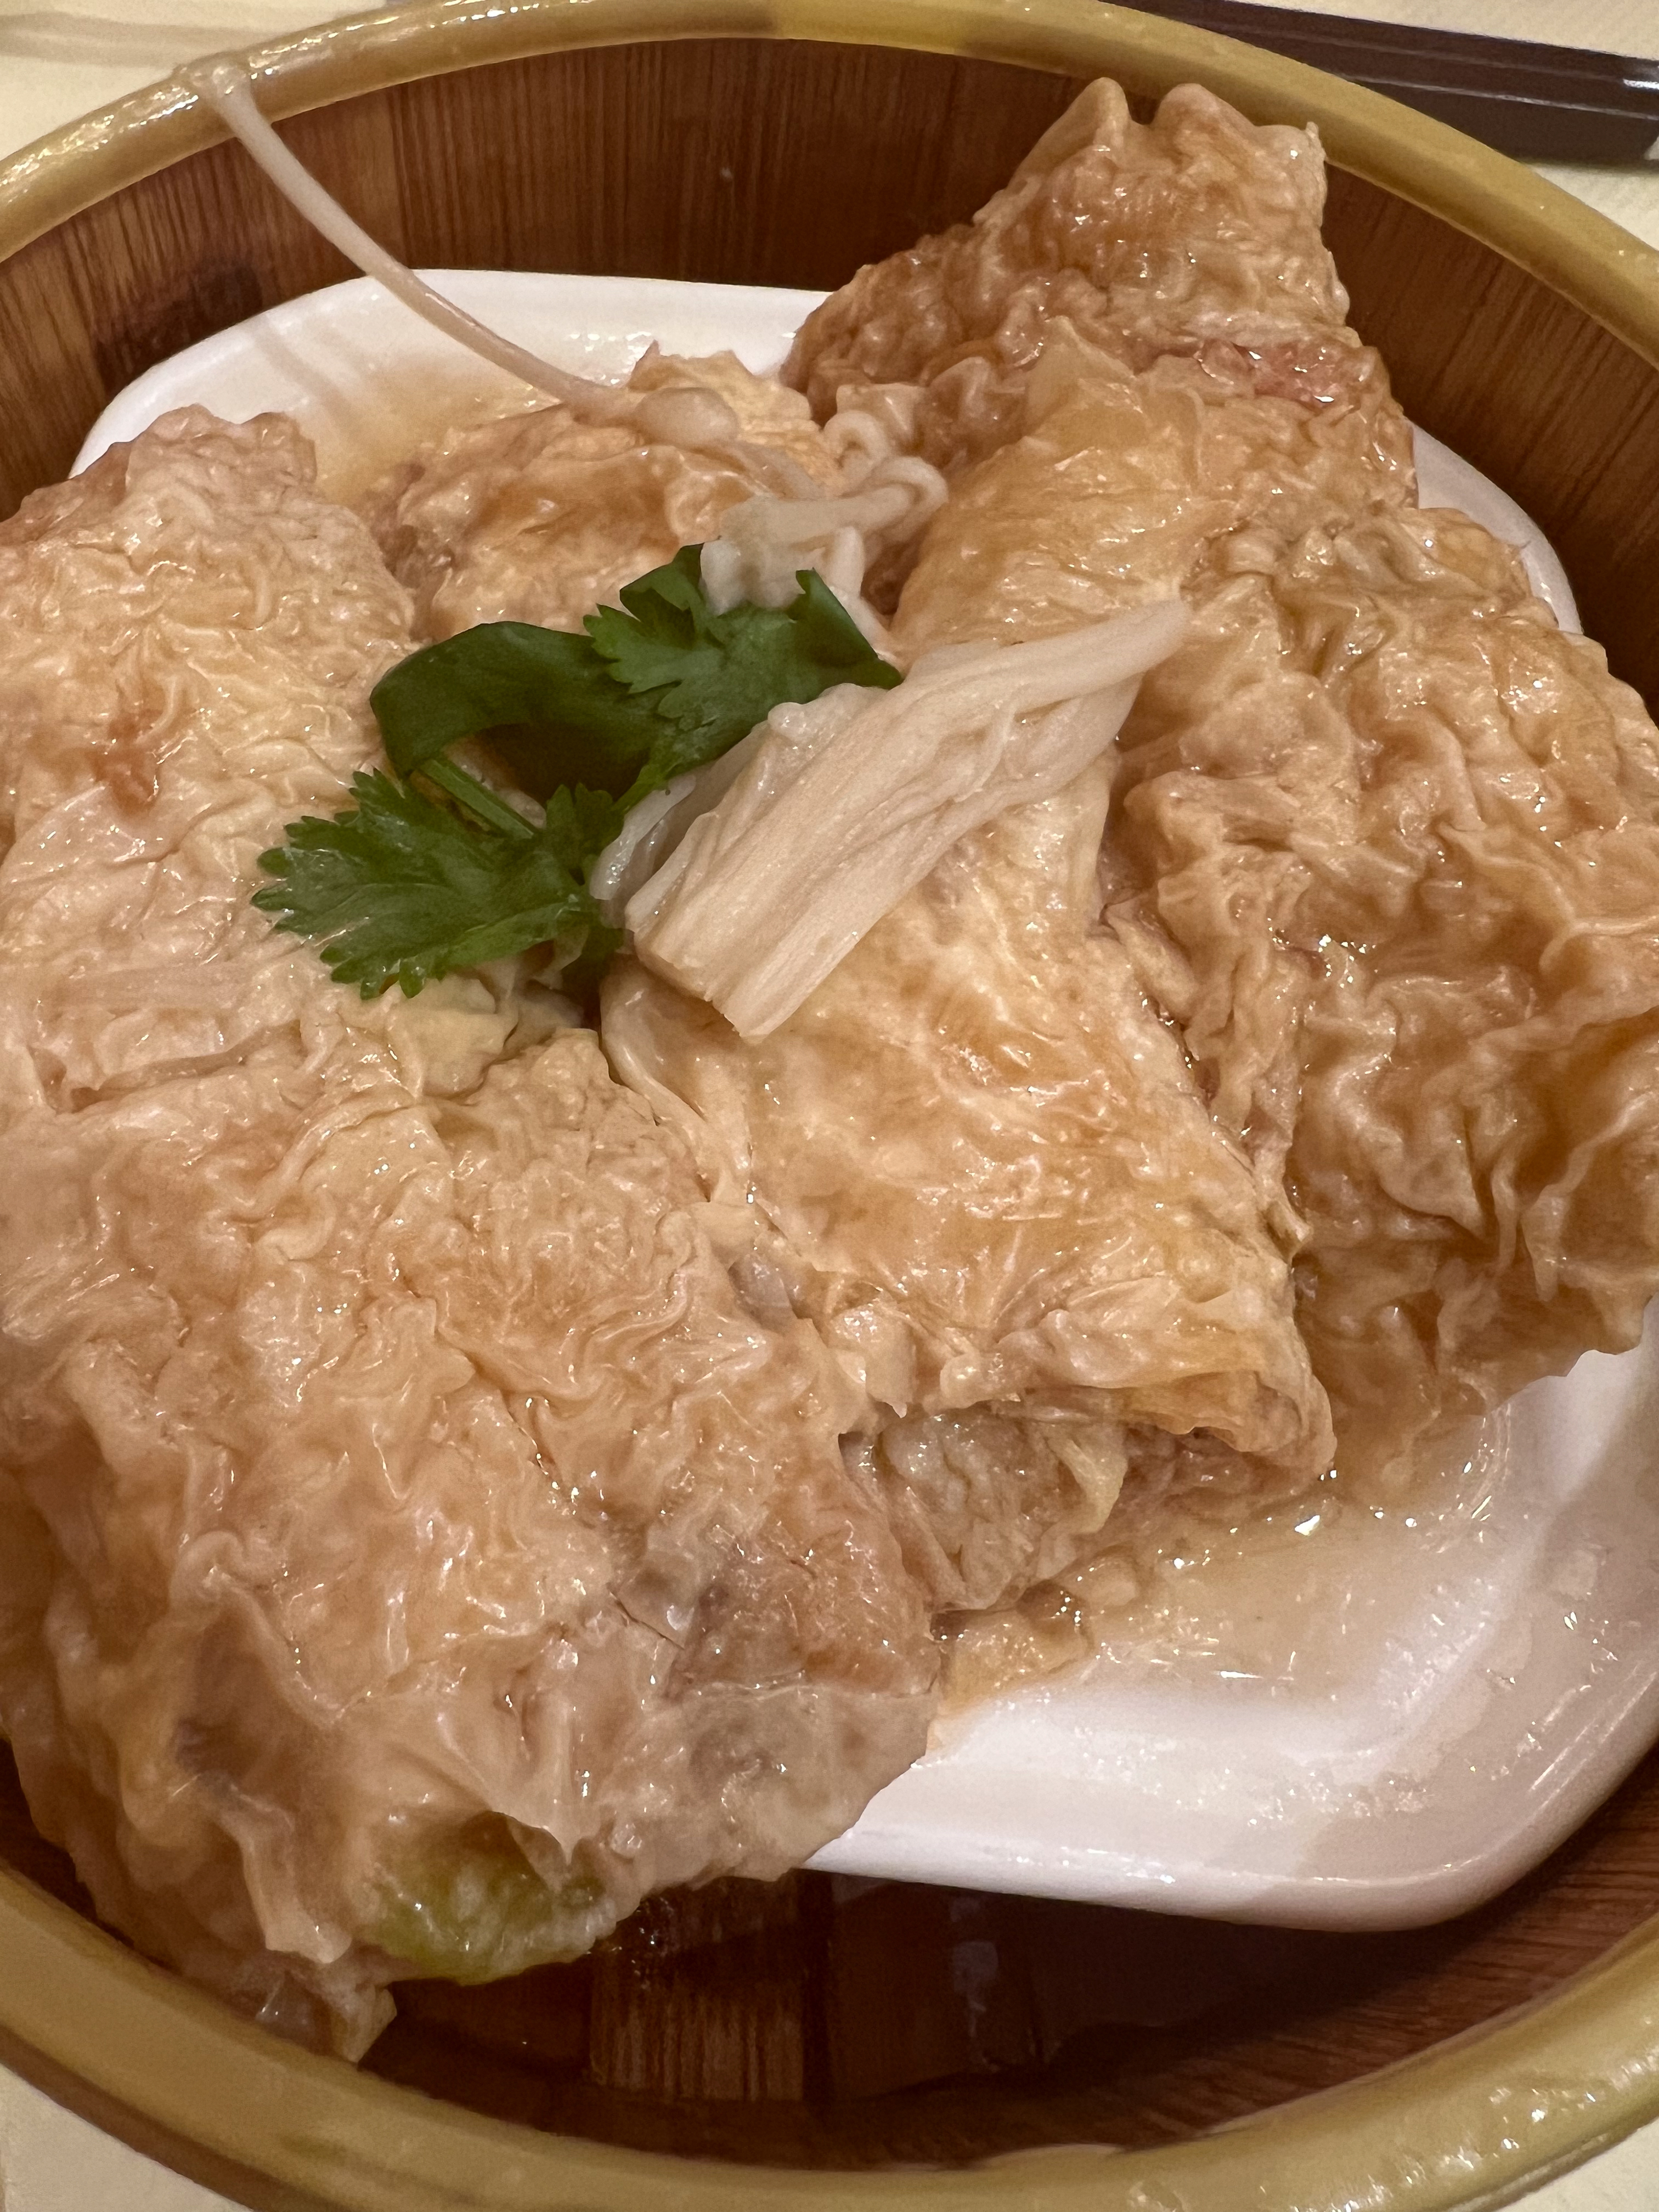 seafood tofu rolls